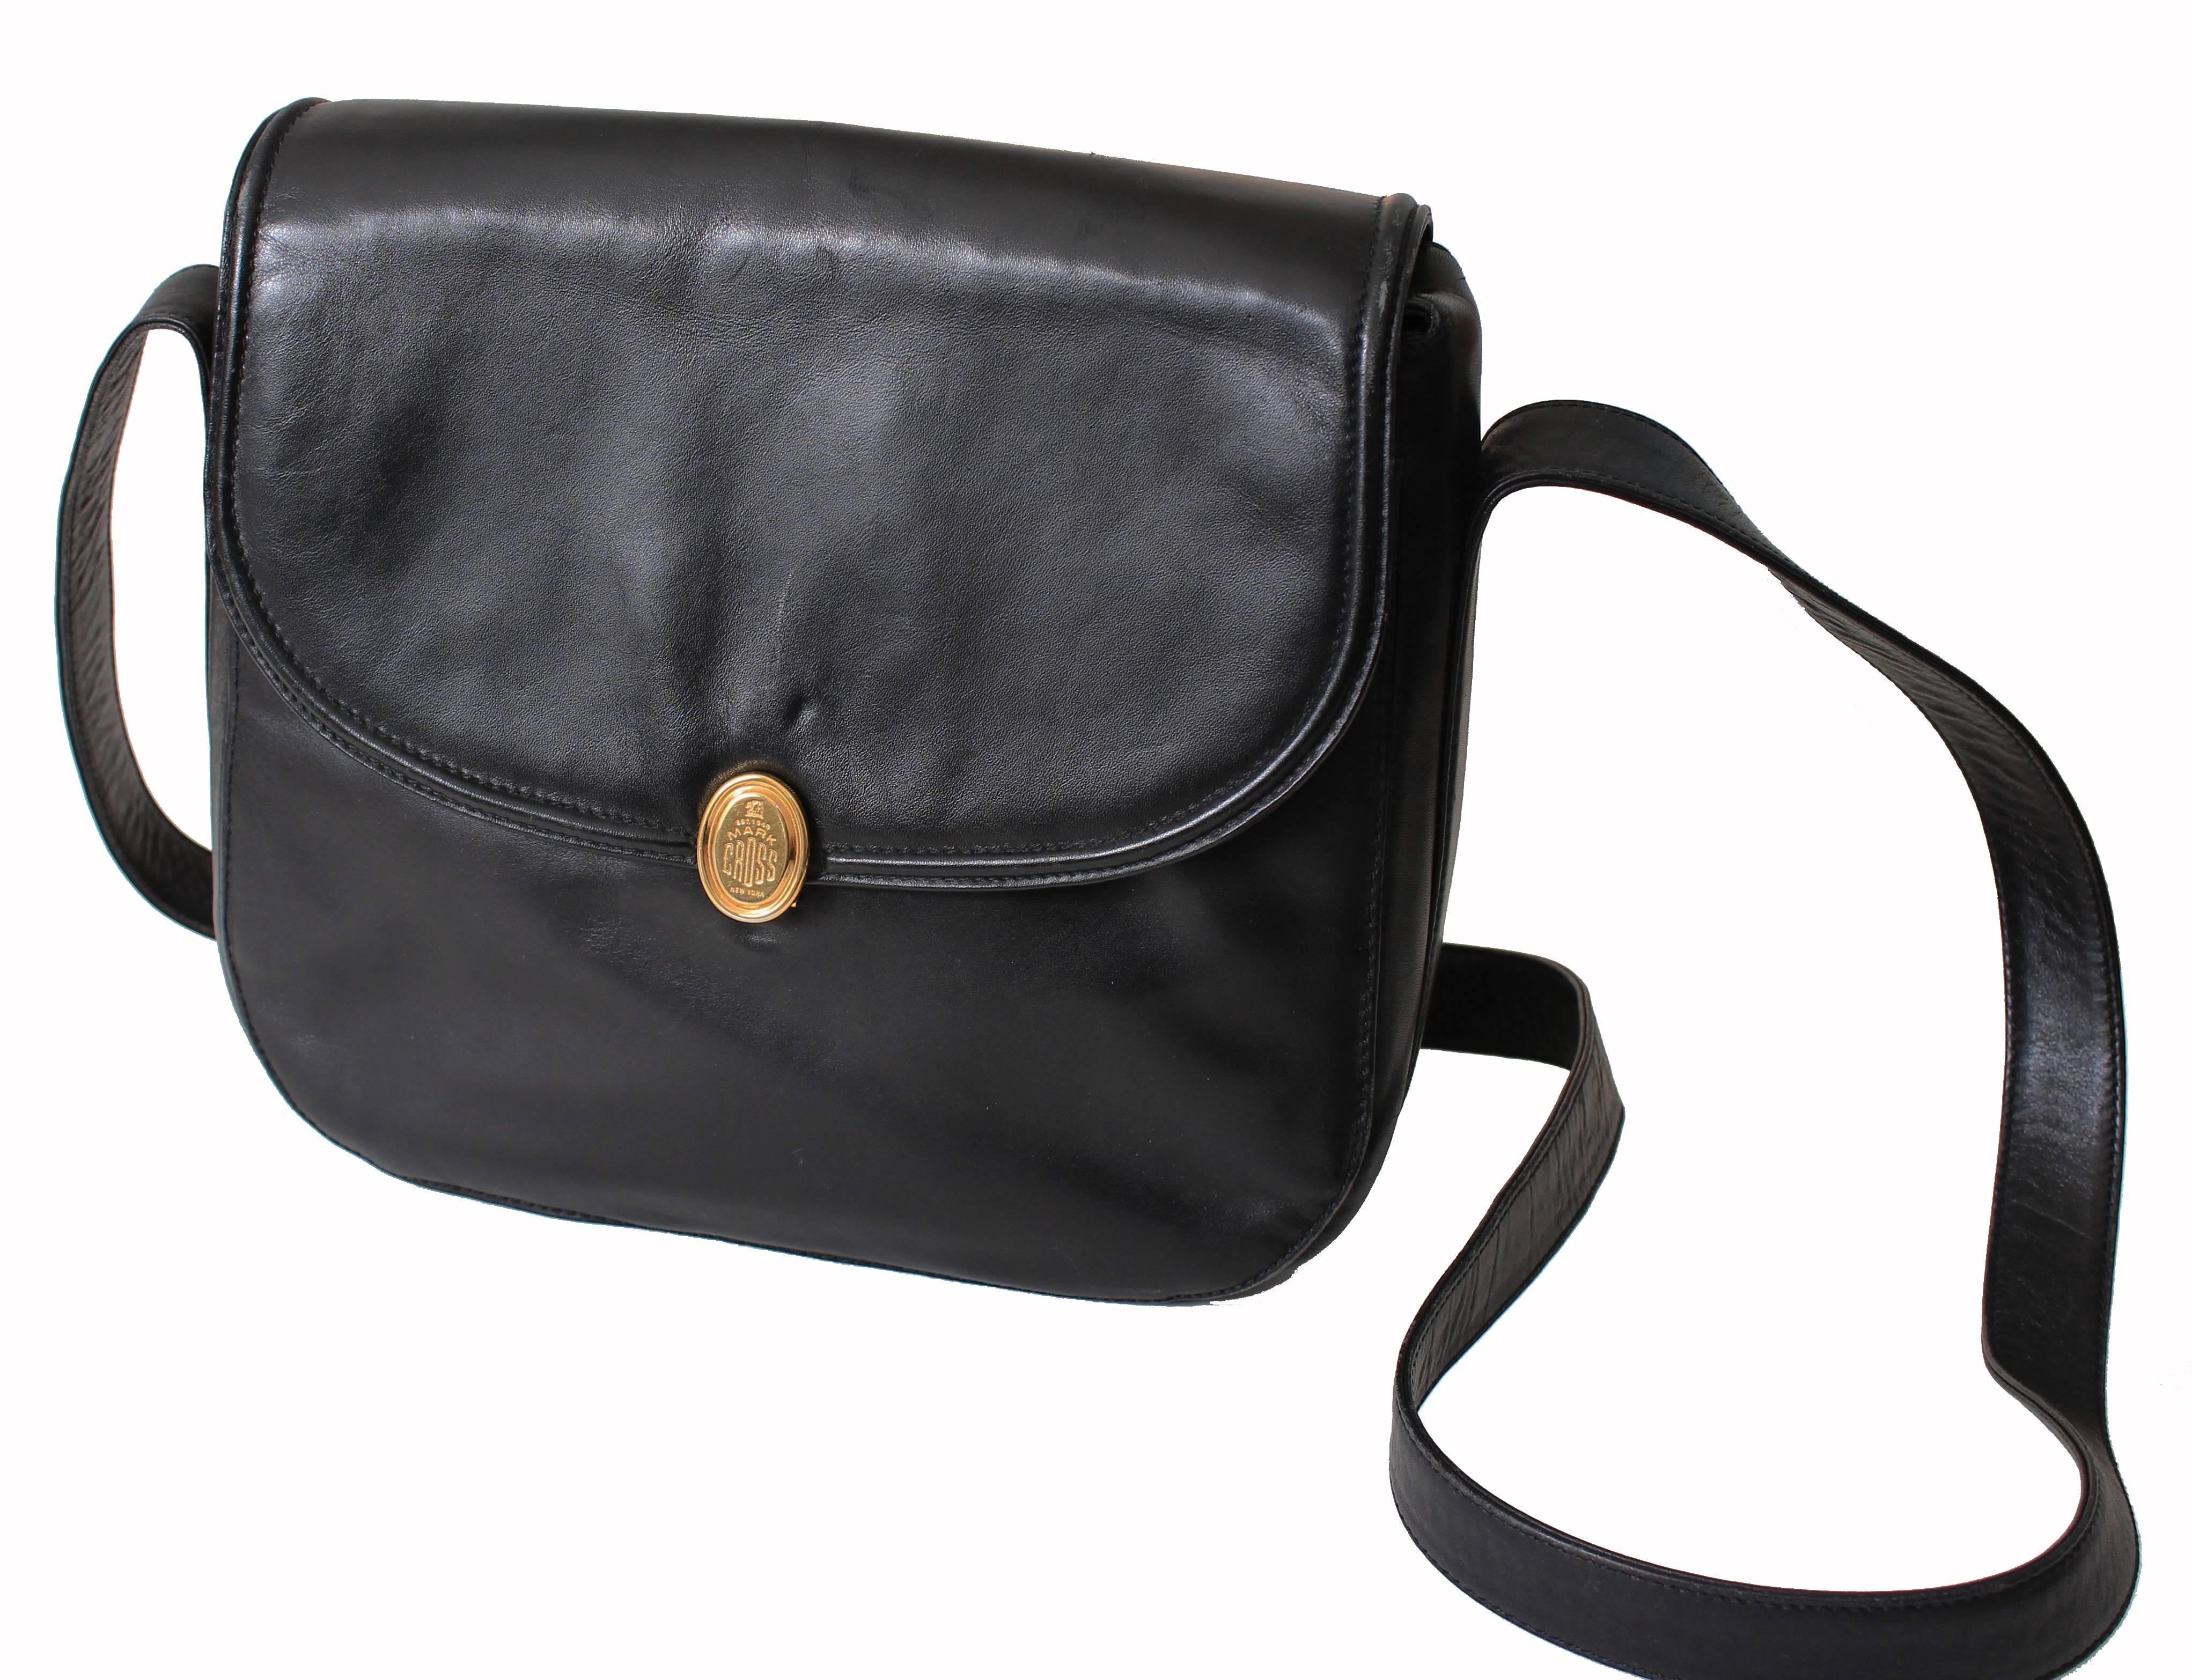 Women's Mark Cross Messenger Bag Cross Body Black Calfskin Leather Made in Italy